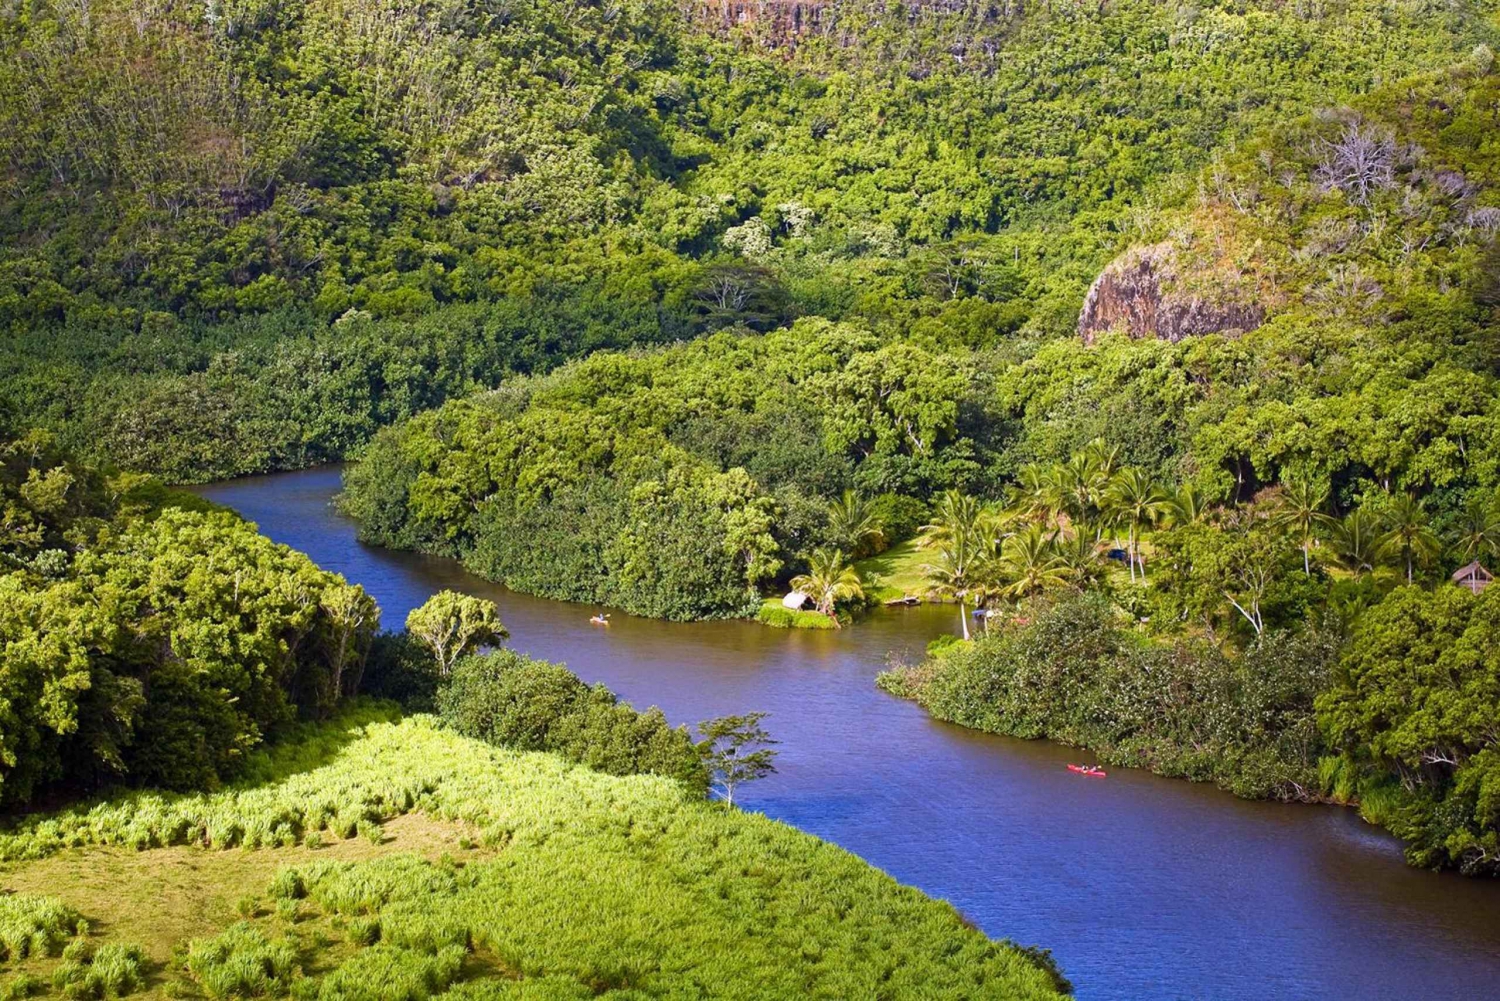 Fra Oahu: Kauai Waimea Canyon & Wailua River Tour